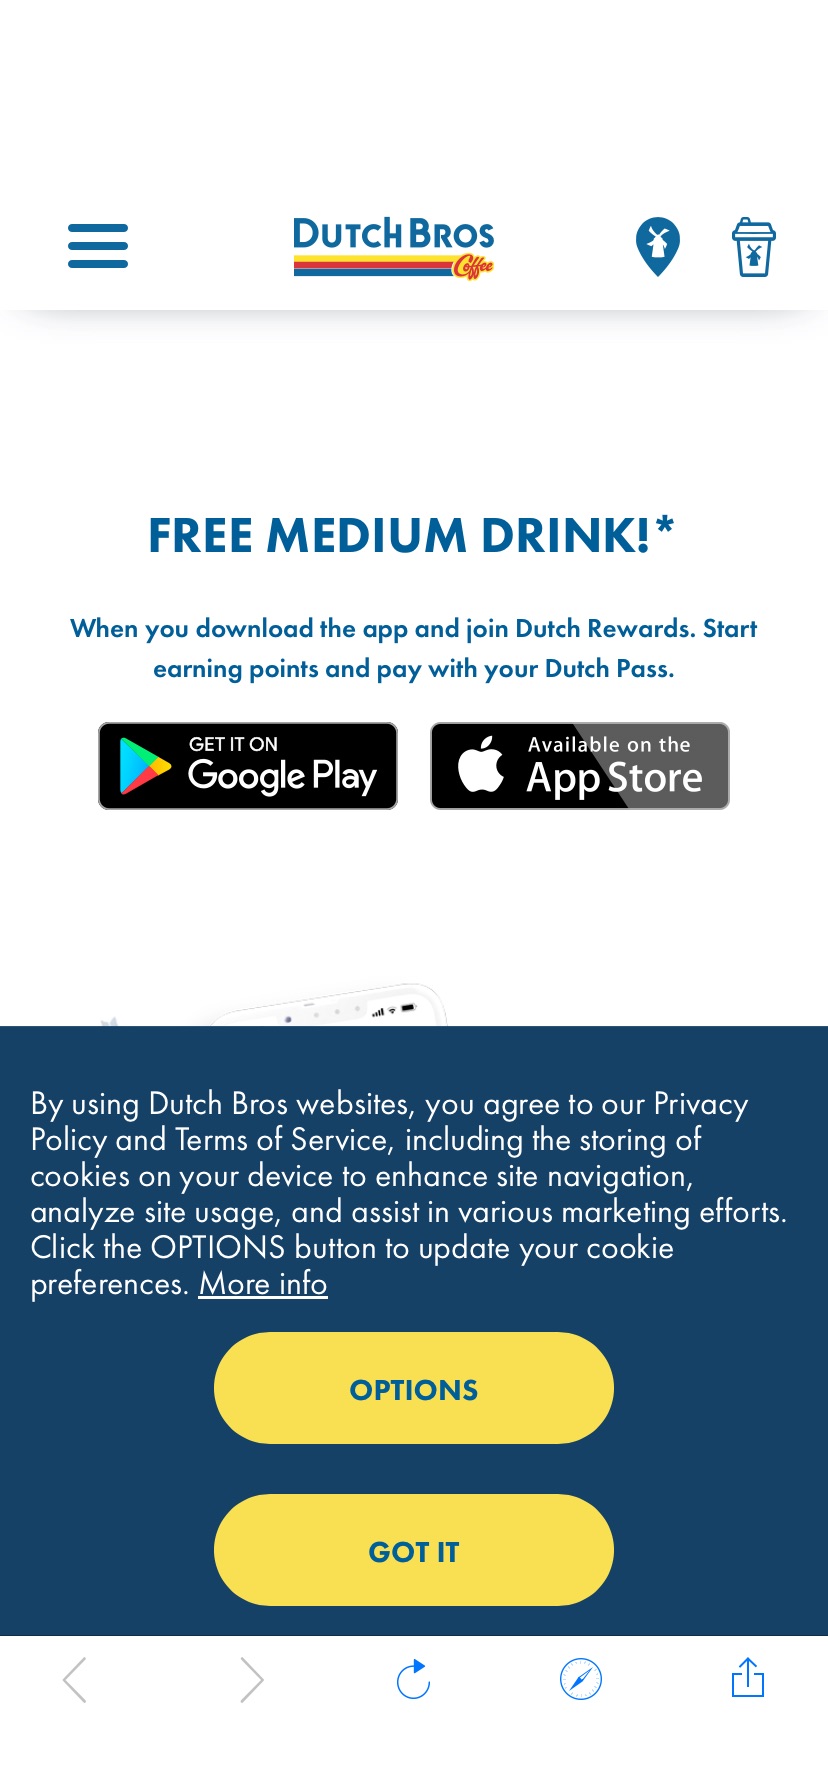 无需消费，只需下载Dutch Bros APP，即可获得免费中杯饮料一杯